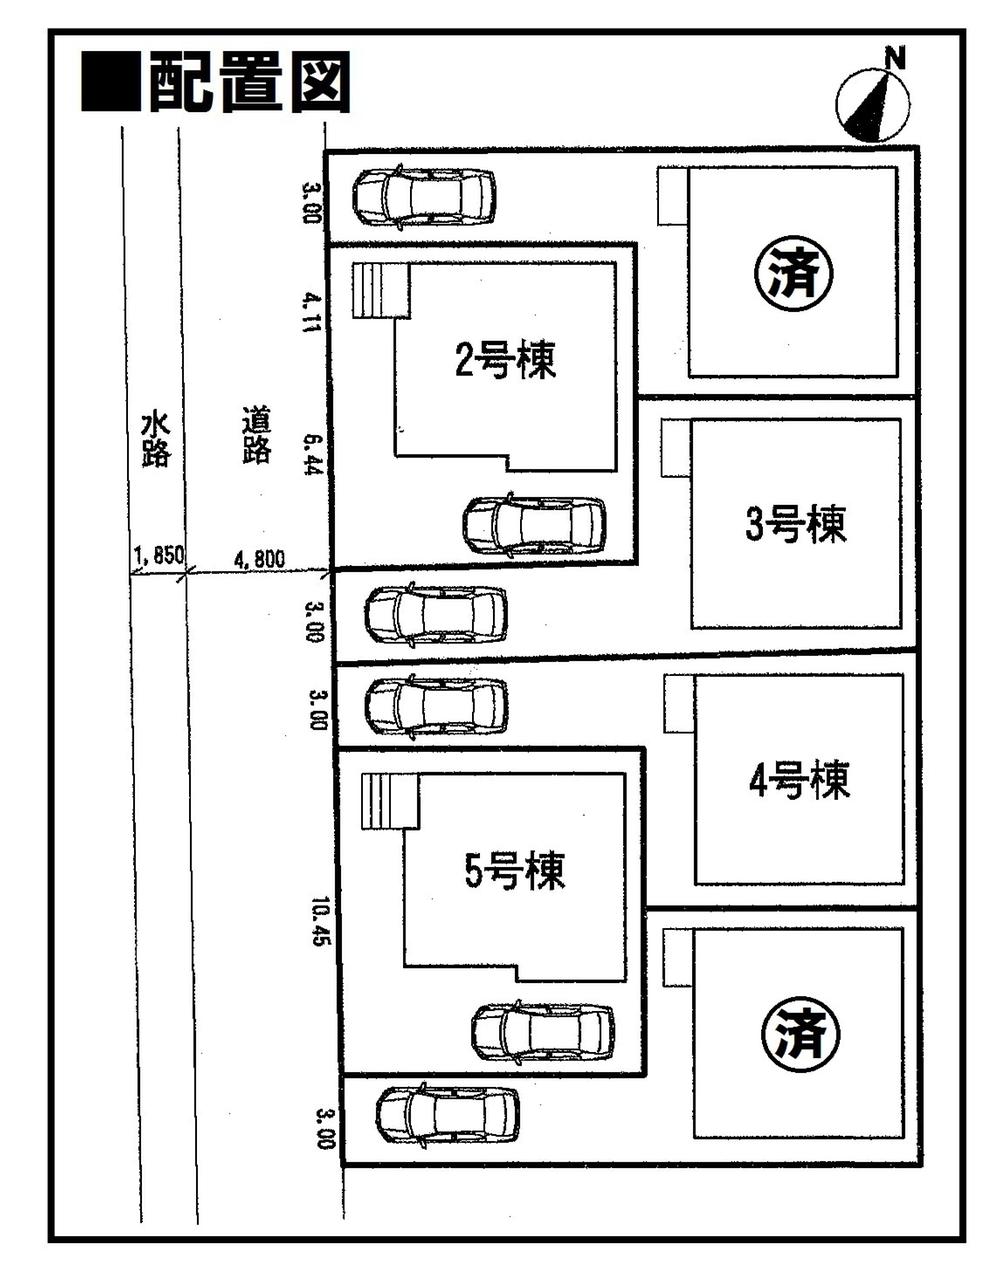 Compartment figure. 16.8 million yen, 4LDK, Land area 104.52 sq m , Building area 91.12 sq m